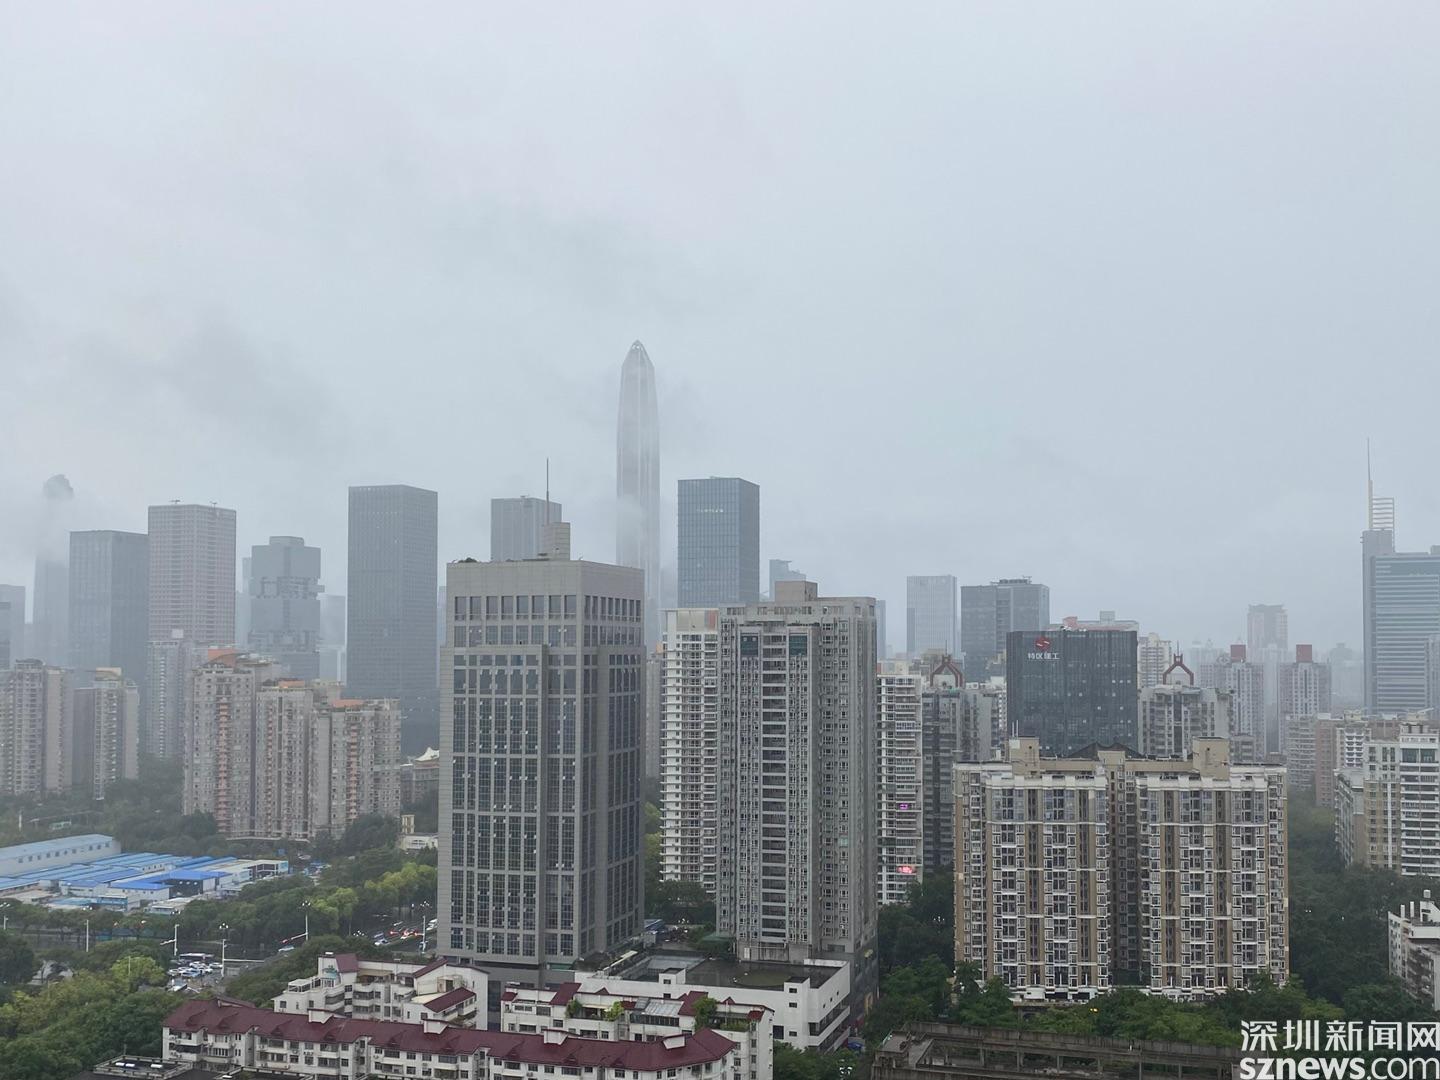 深圳市暴雨预警升级为橙色 预计强降雨还将持续2-3小时